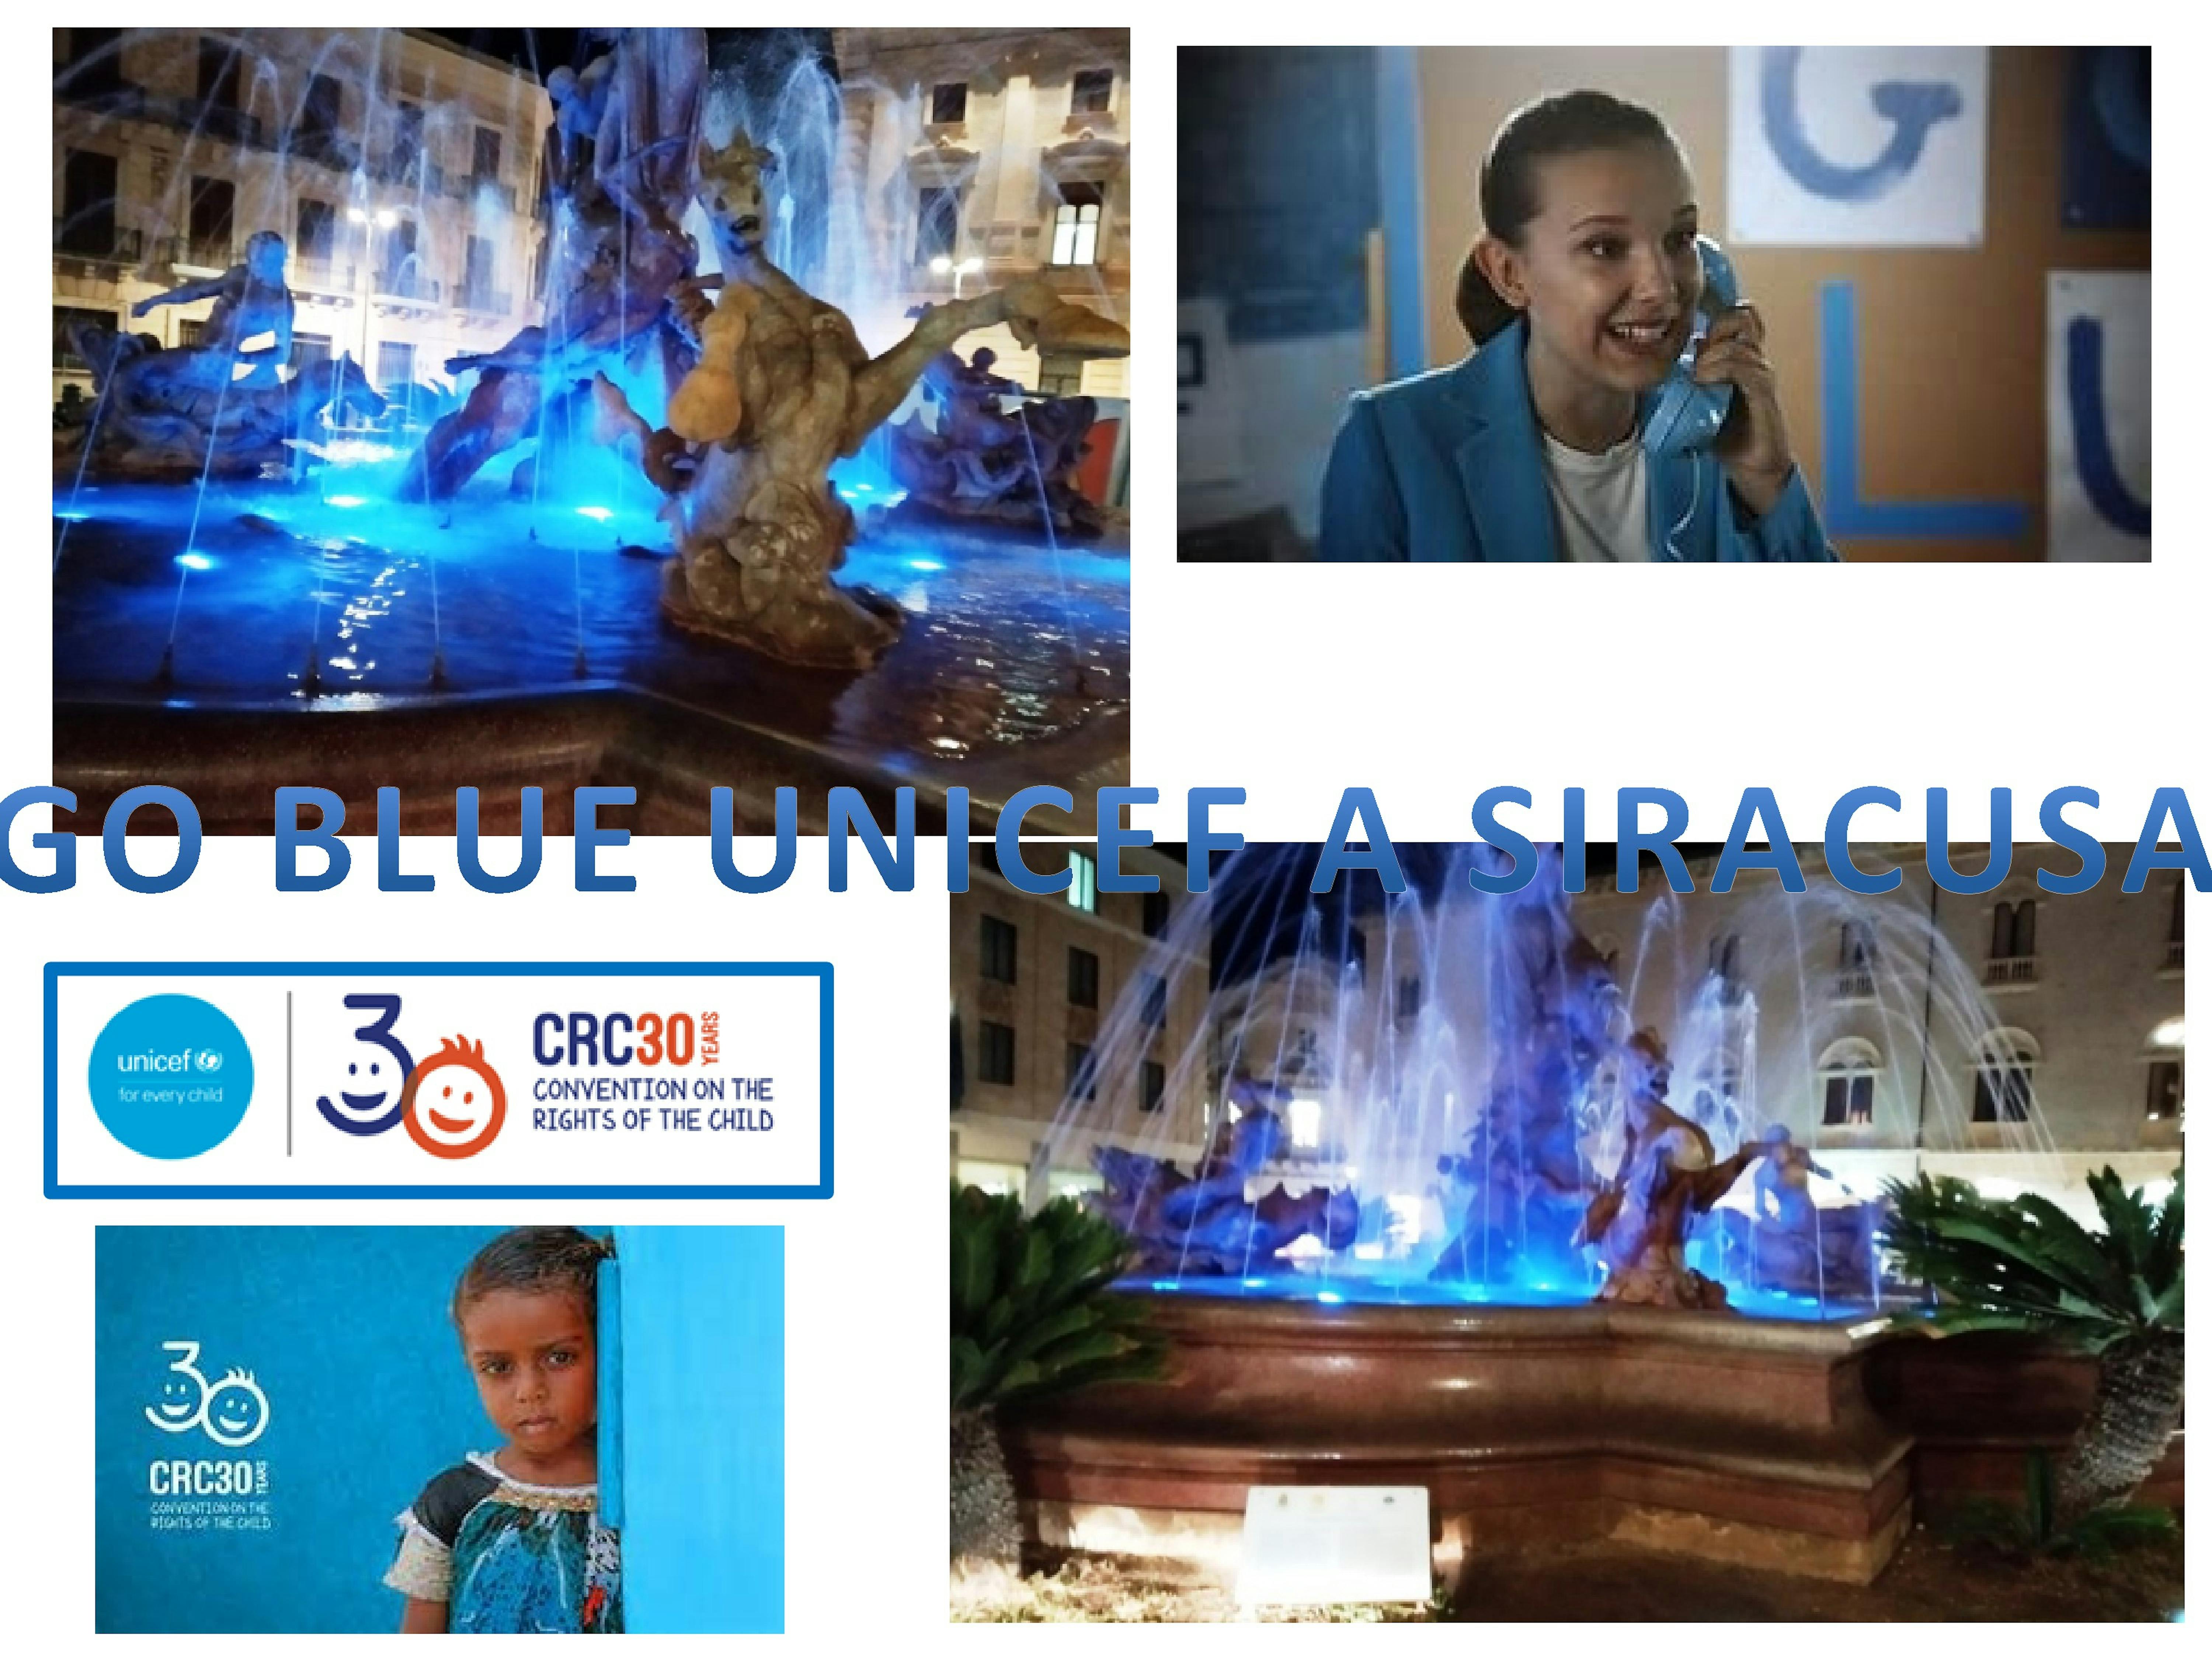 Siracusa partecipa aI Go Blue UNICEF illuminando la Fontana di Diana